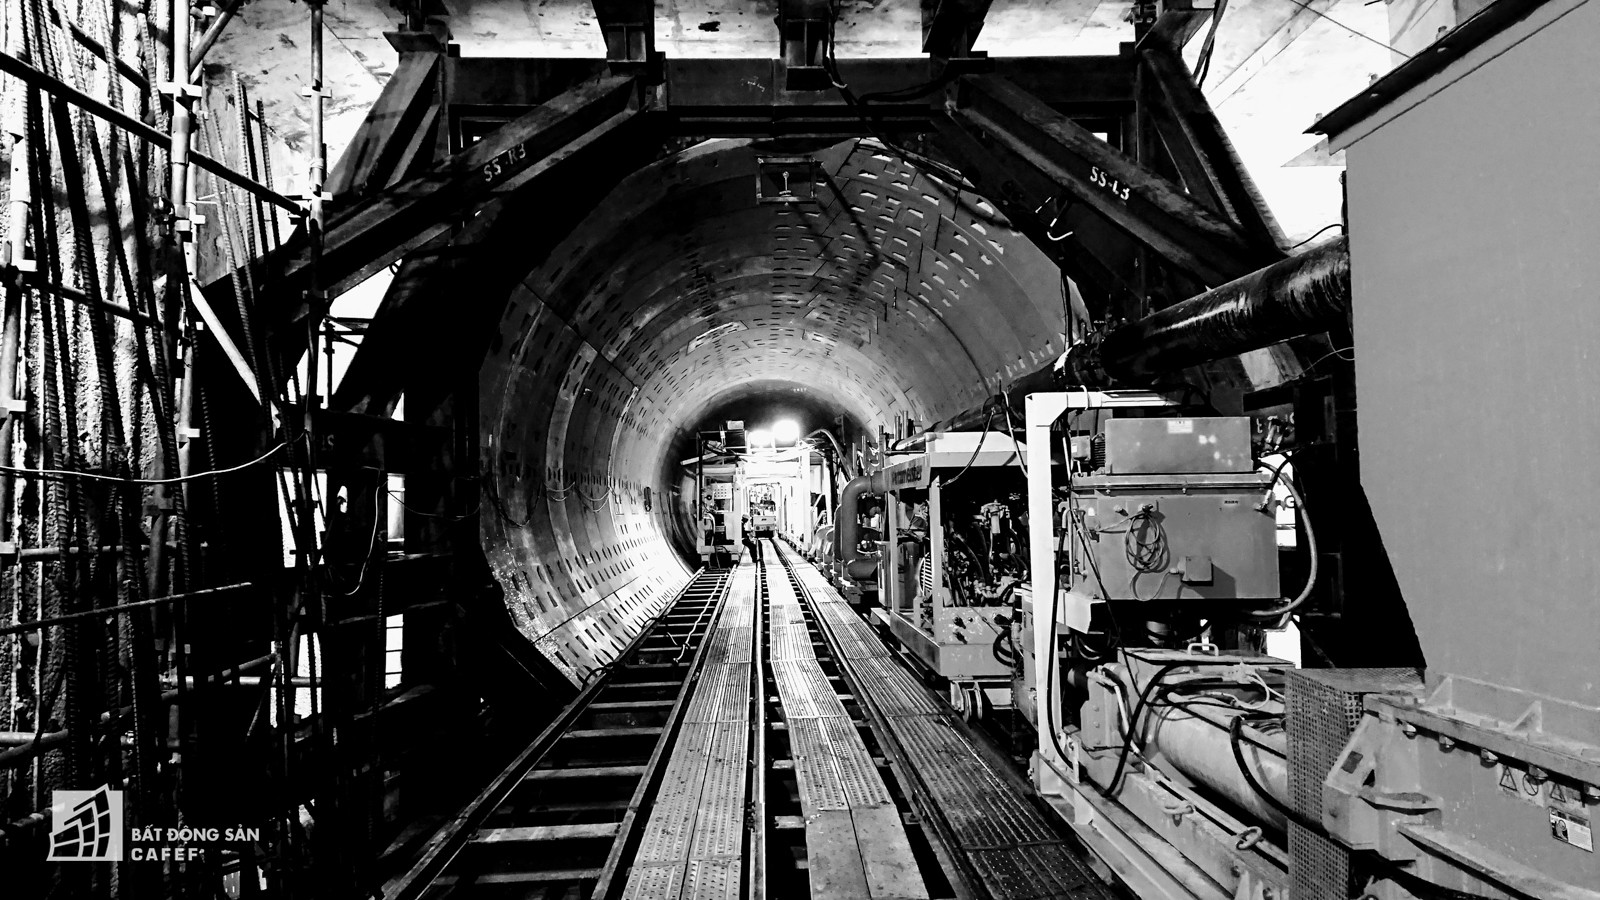 Ngắm đường hầm tàu điện đầu tiên tại Việt Nam sâu 17m dưới lòng đất Sài Gòn - Ảnh 3.